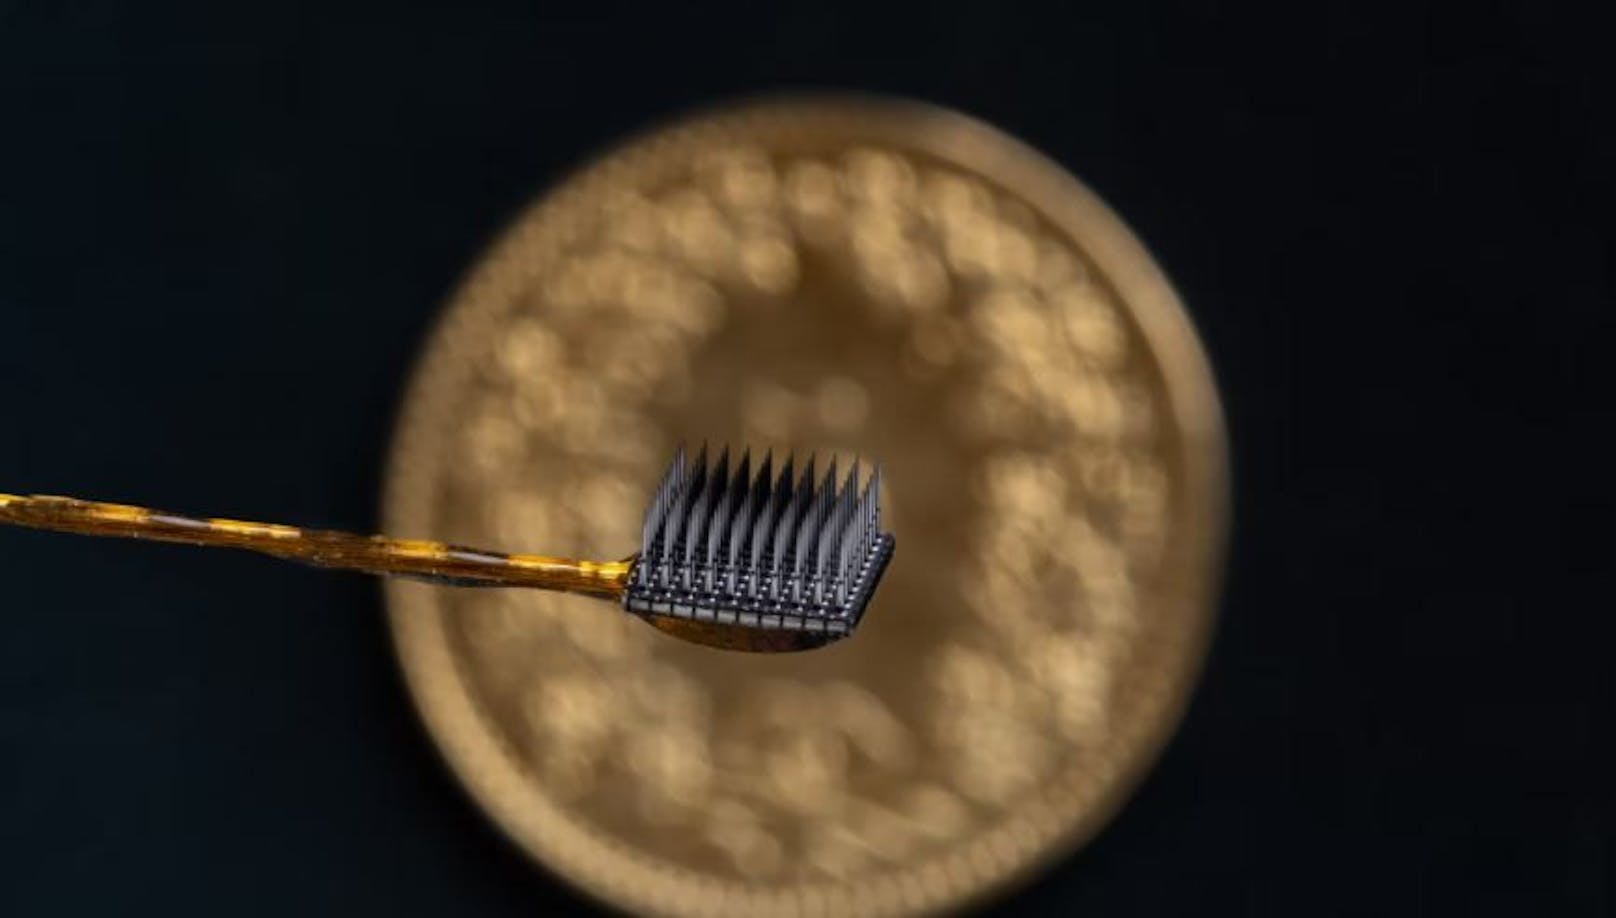 Zwei Mikroelektroden-Geräte mit jeweils 3,2 mm wurden in die Oberfläche des motorischen Kortex eingeführt – dem Teil des Gehirns, der für Bewegungen verantwortlich ist. Jedes Array hat 64 nadelartige Elektroden, die neuronale Signale aufzeichnen.